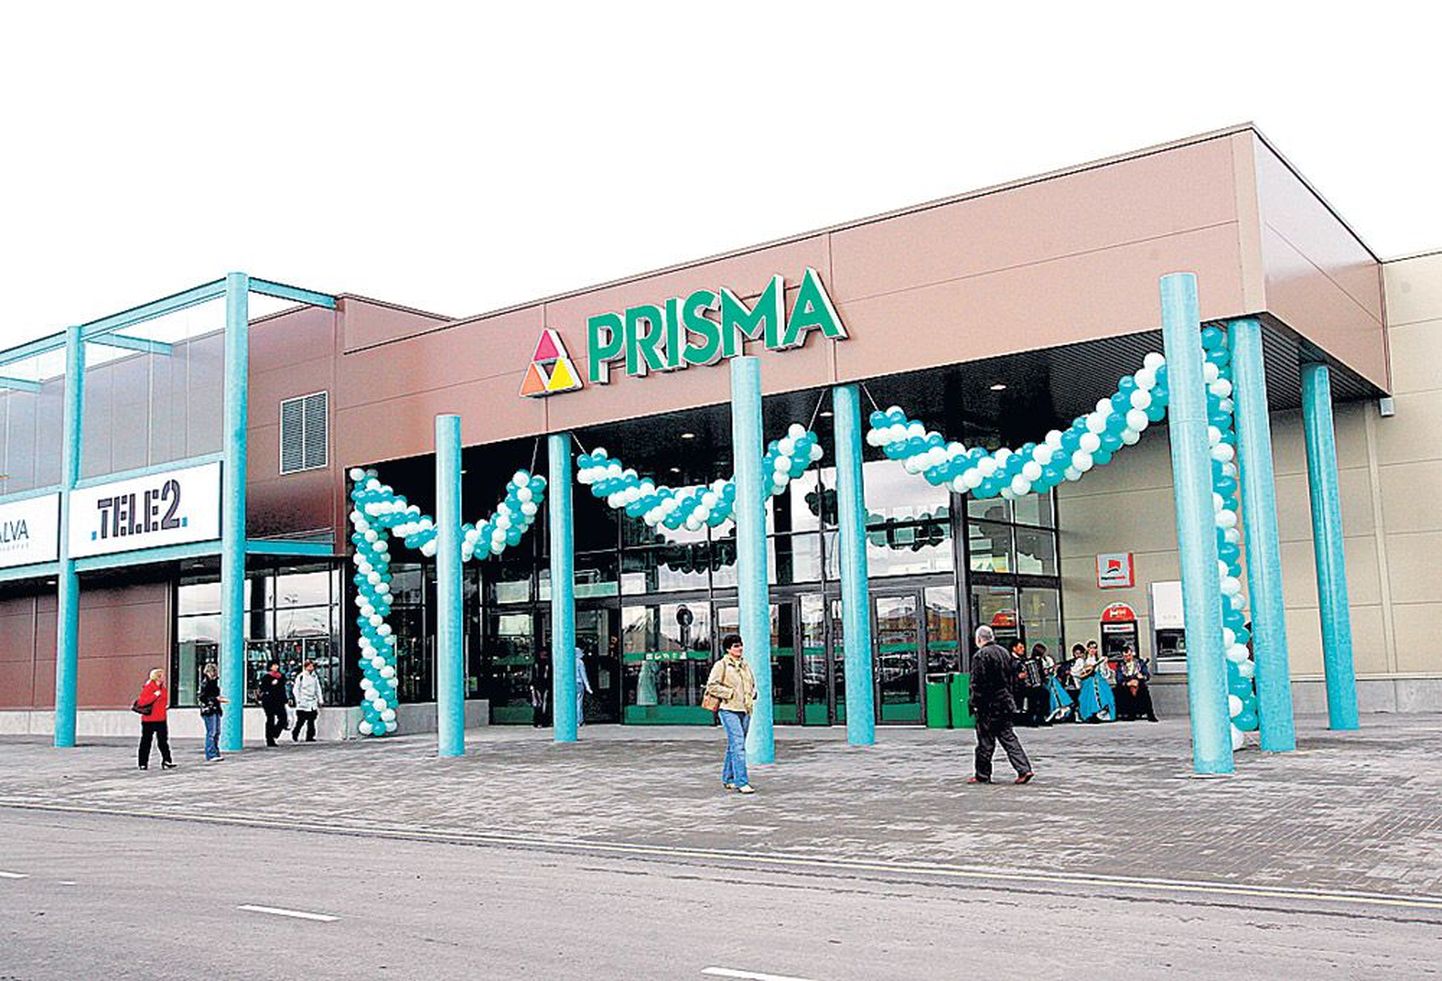 Prisma on seni piirdunud Eestis vaid viie kauplusega Tallinnas, nüüd loodab ettevõte saada kauplemiskoha magusal krundil Tartu servas. Pildil Prisma peremarketi avamine Lasnamäel 2006. aasta oktoobris.